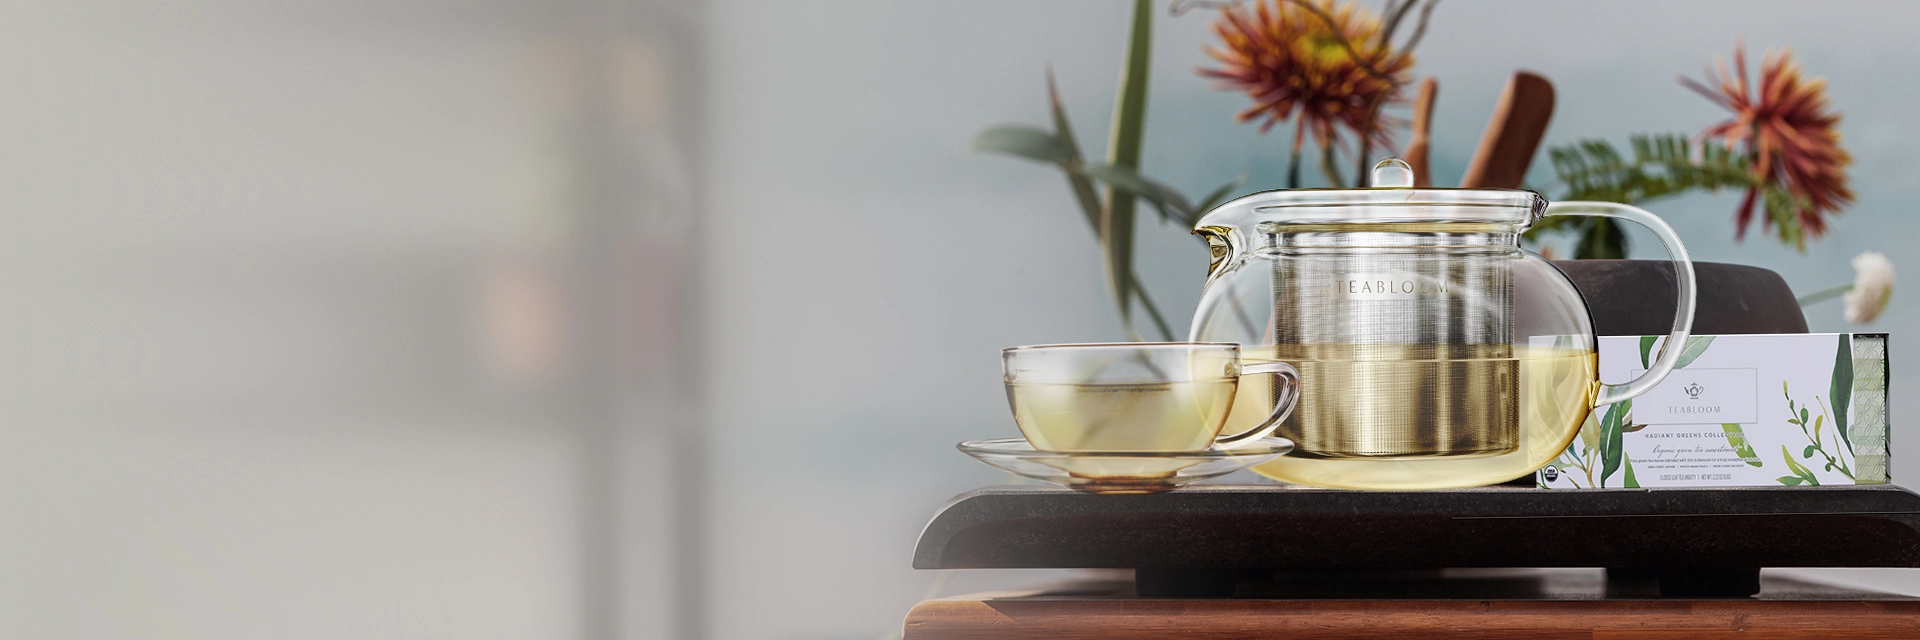 Luxury Teas and Teaware